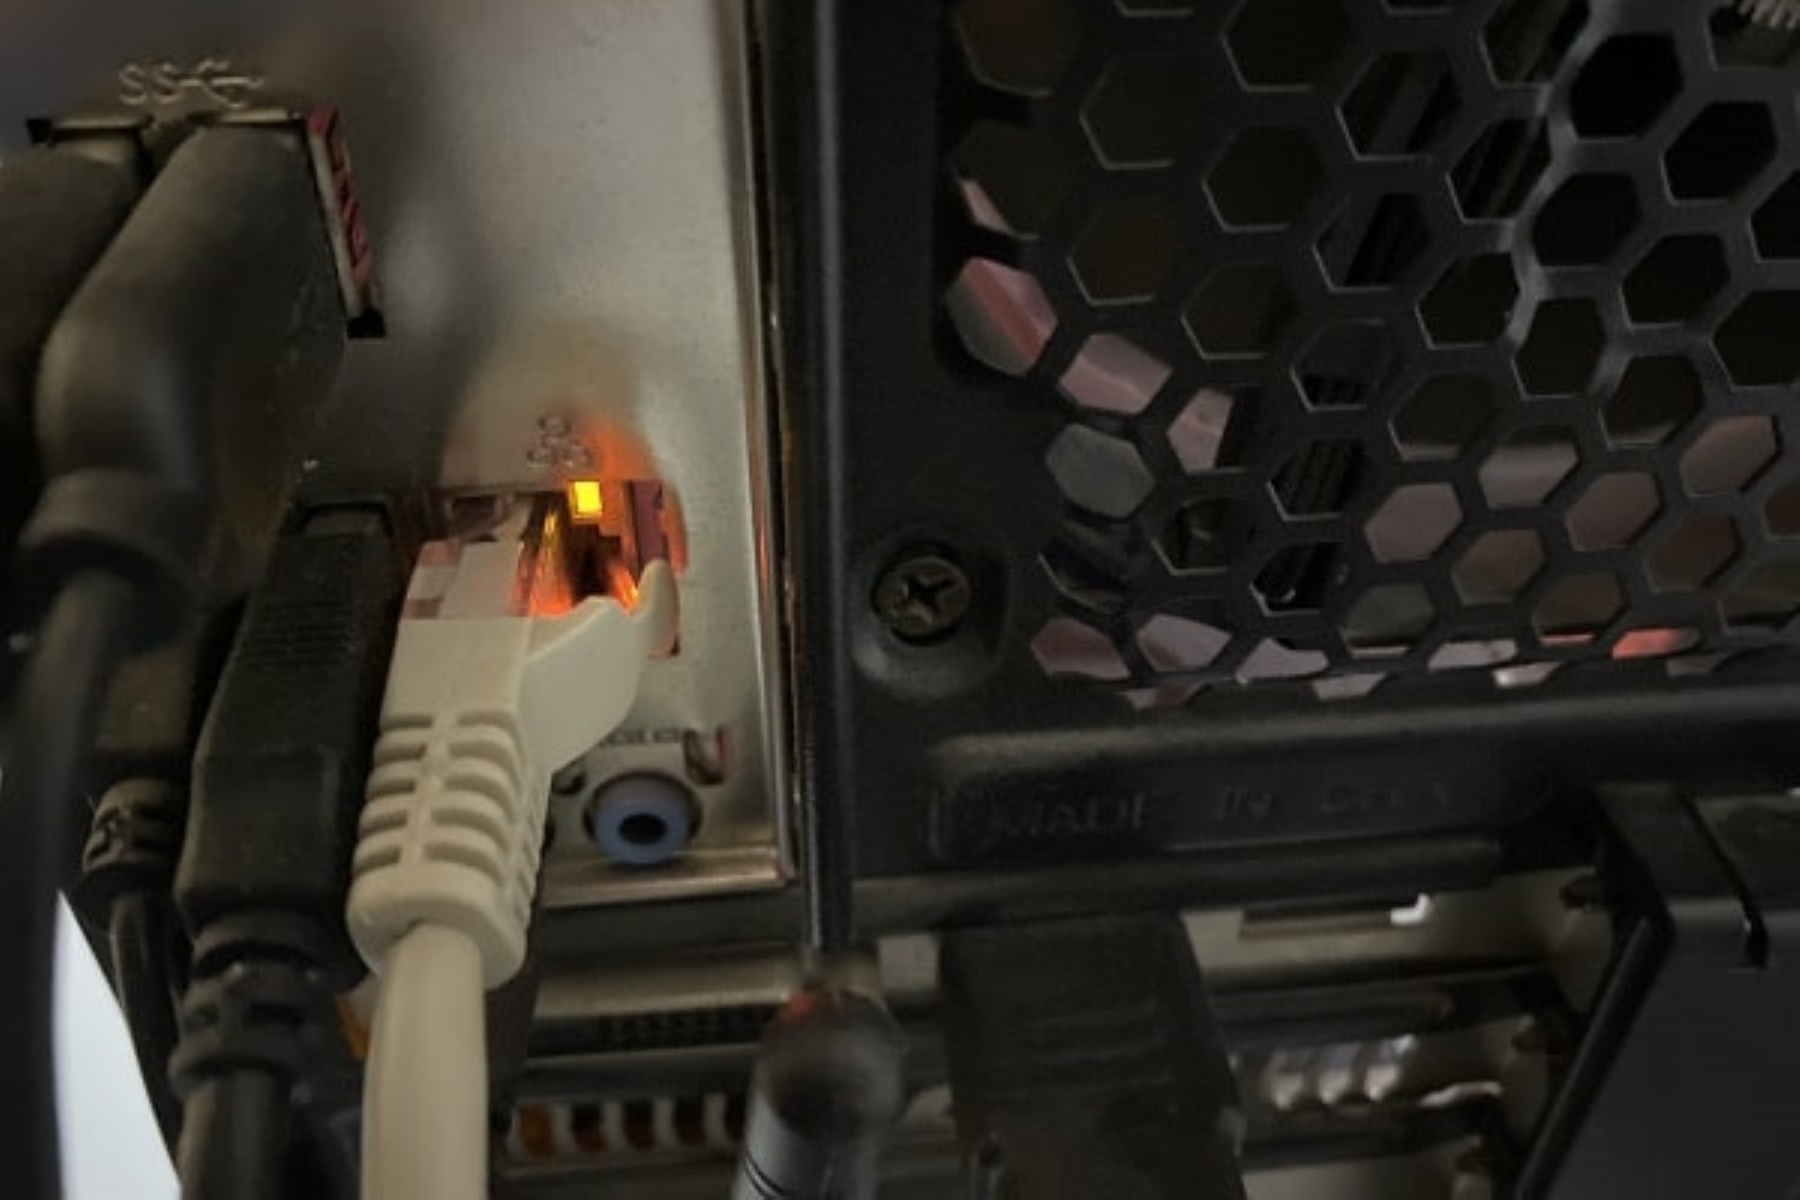 What Does Orange Light Mean On Ethernet Port